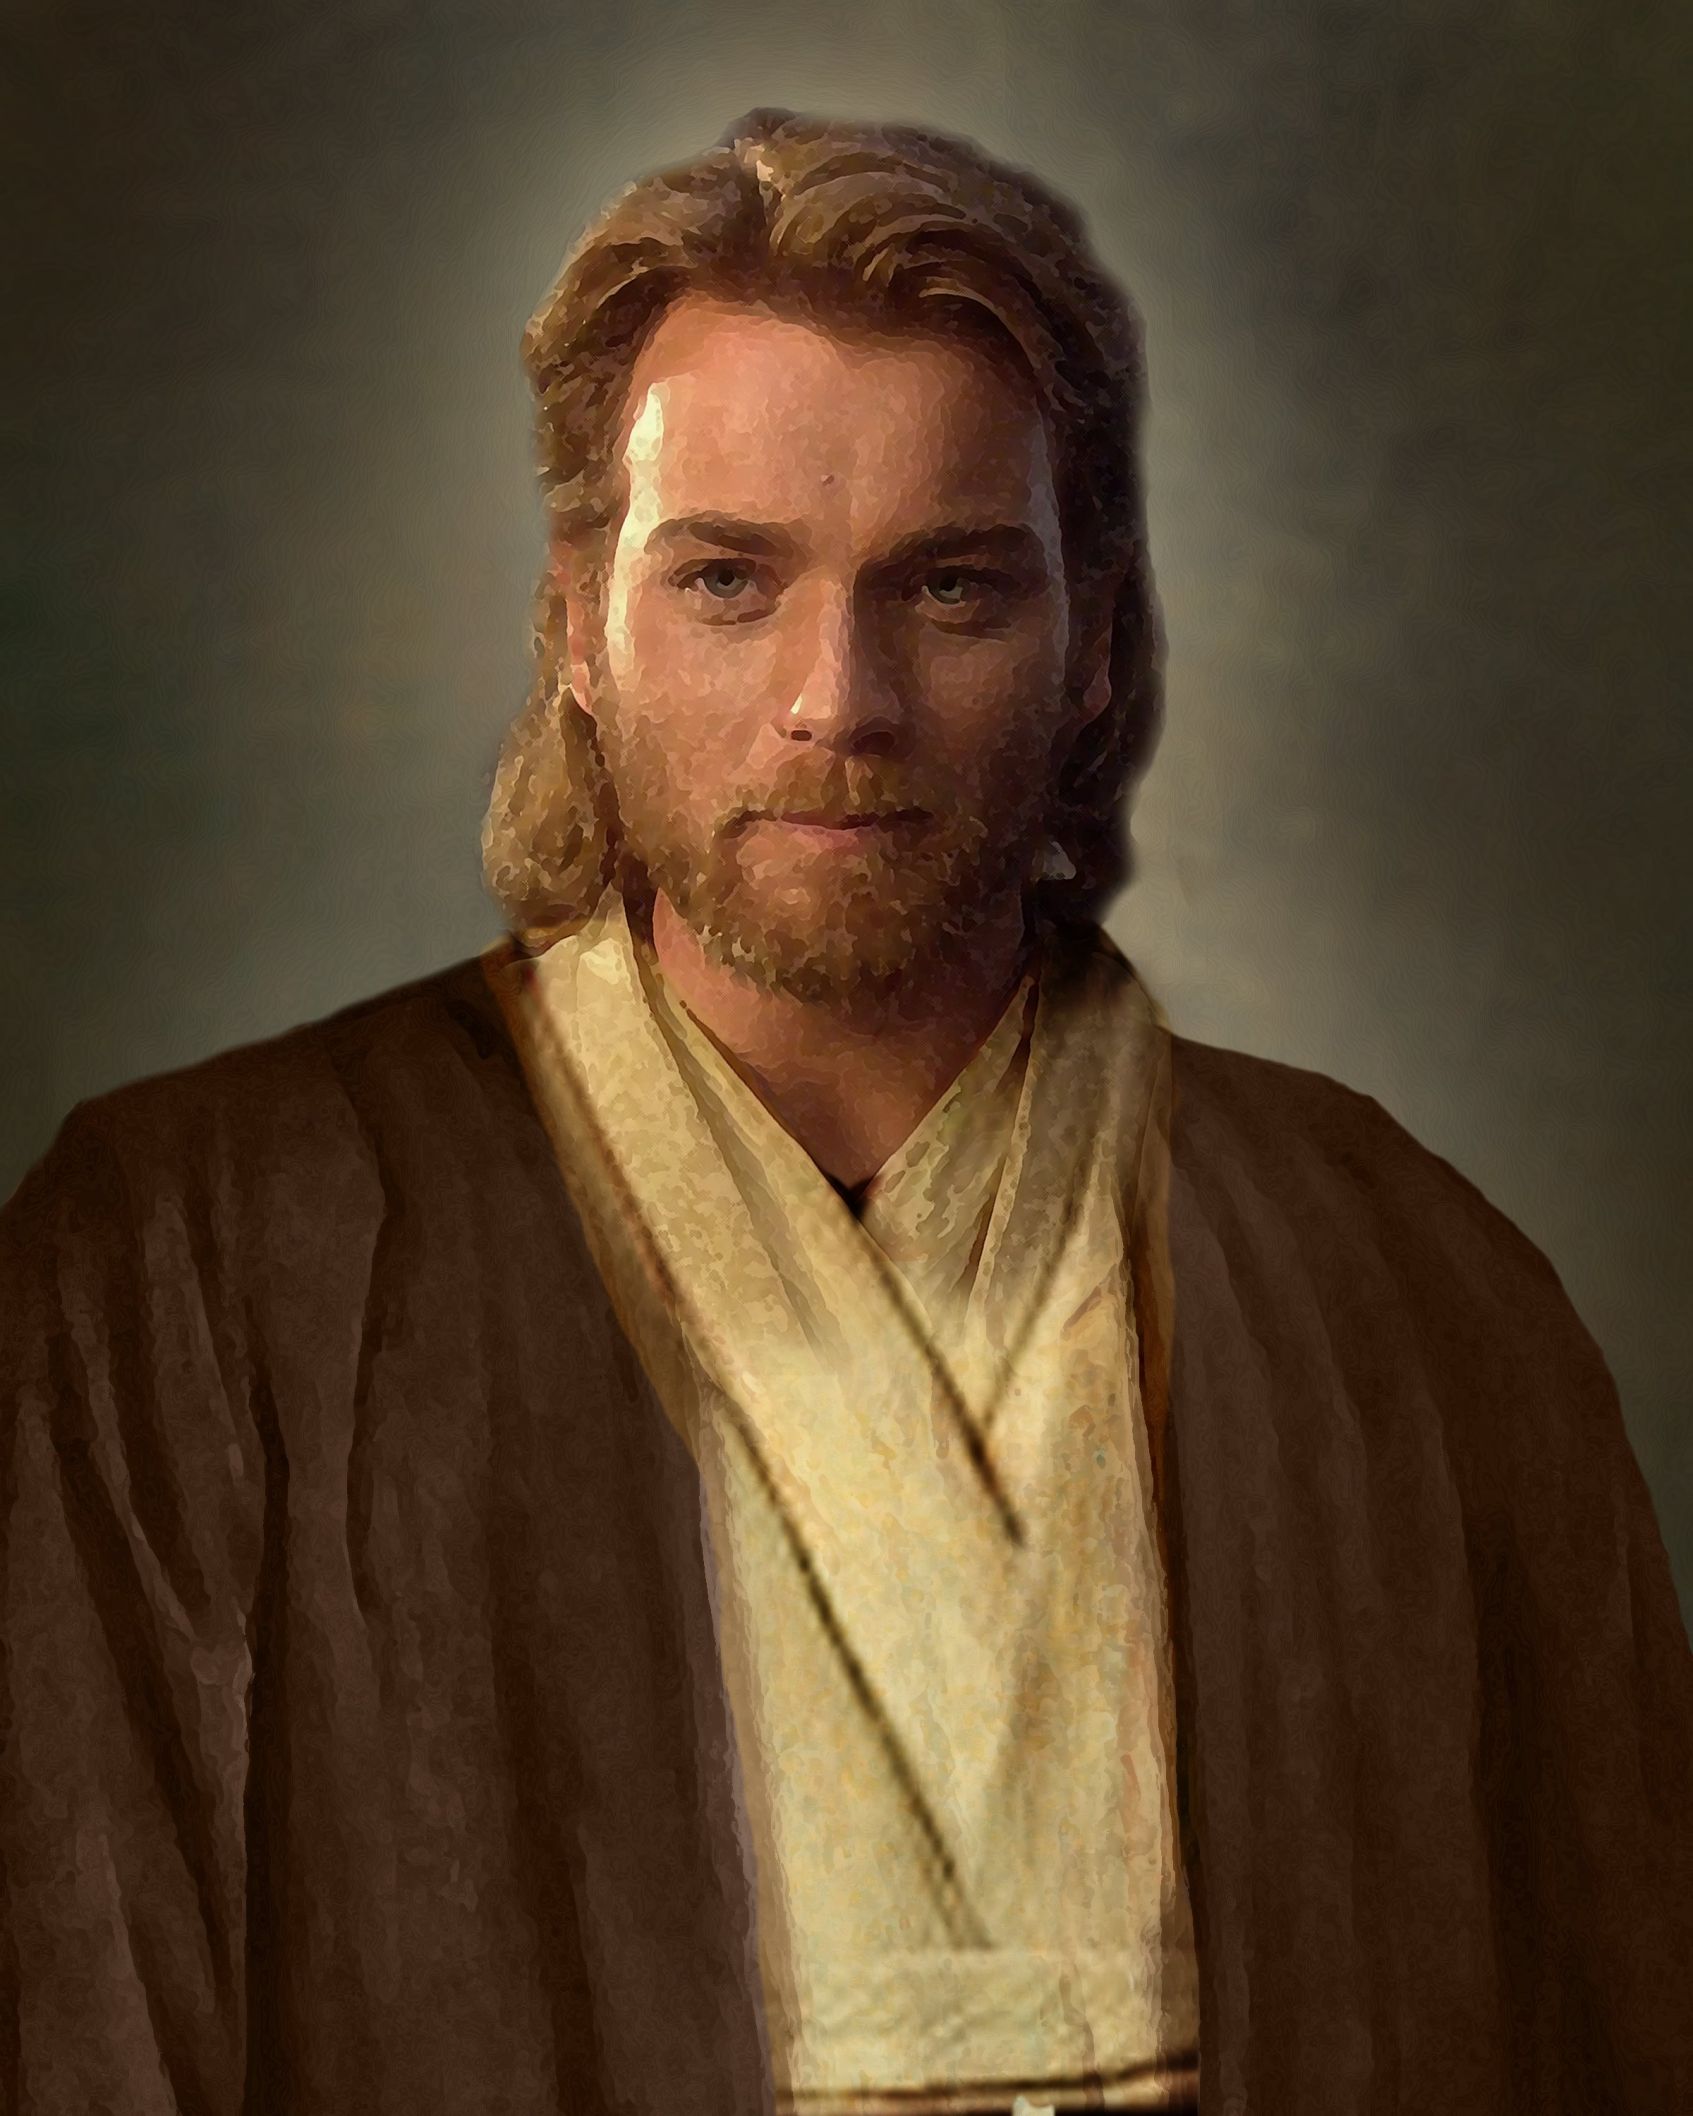 Jesus Obi-Wan Kenobi. 